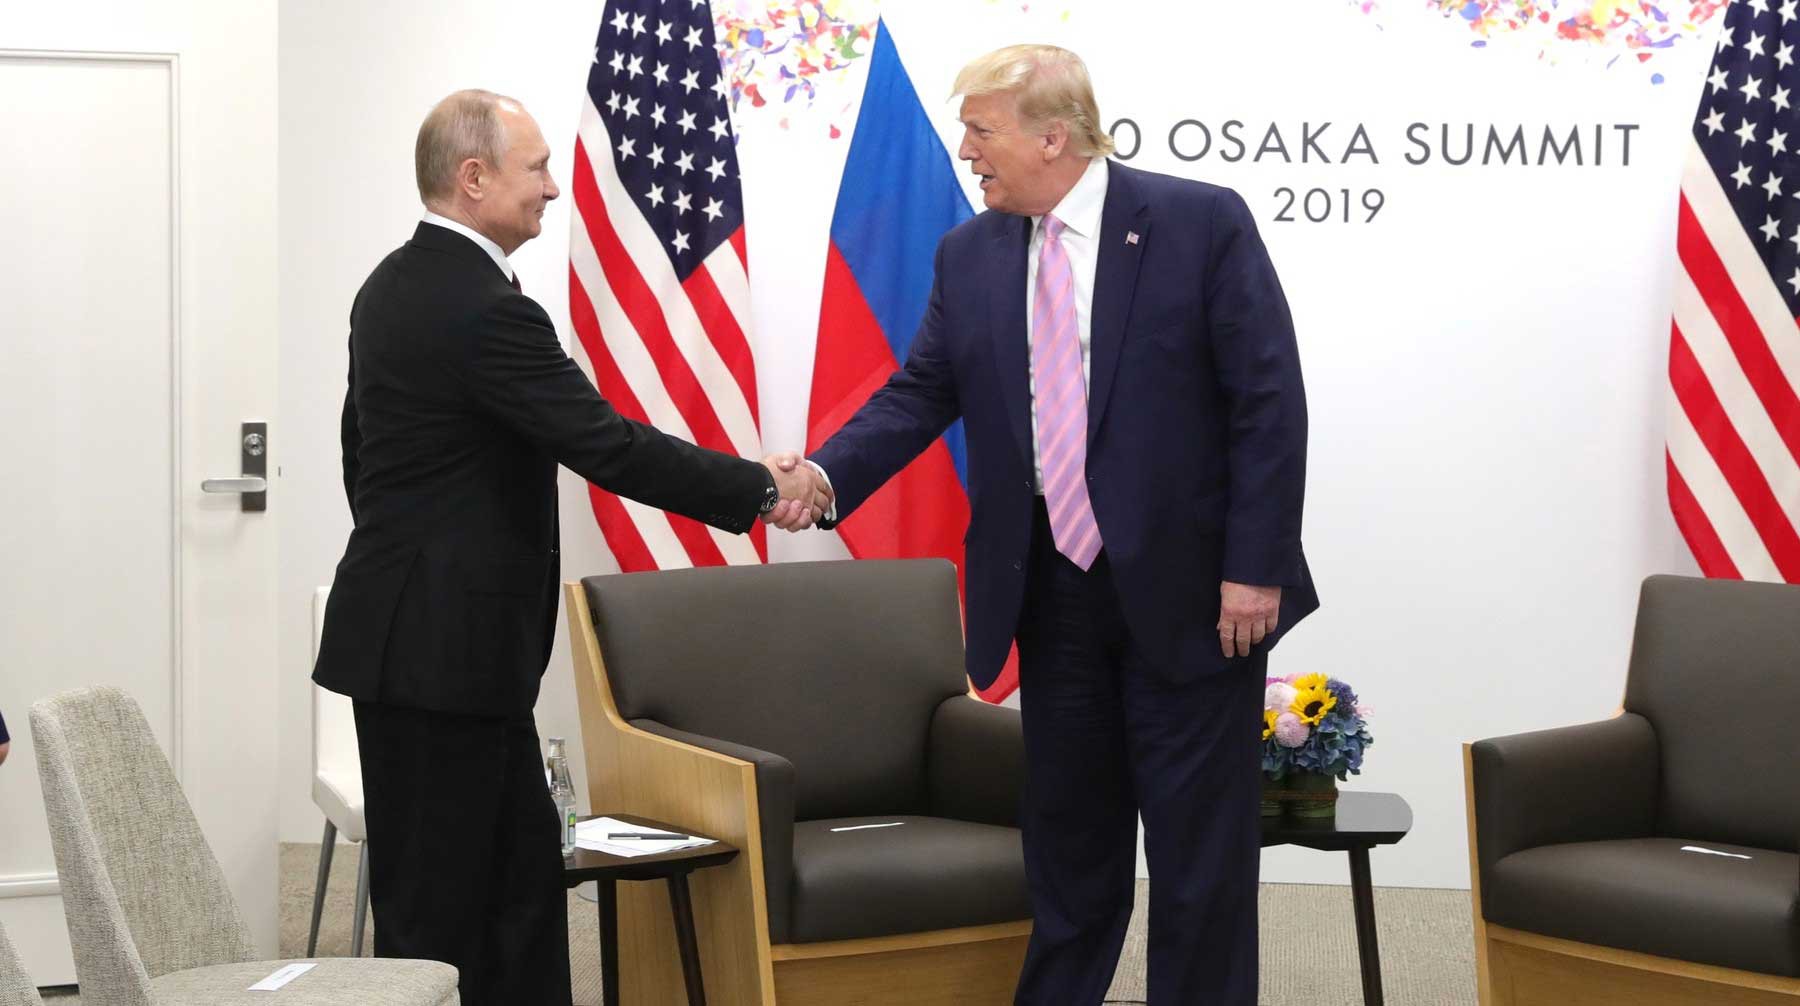 Dailystorm - Путин назвал встречу с Трампом хорошей возможностью продолжить диалог после Хельсинки